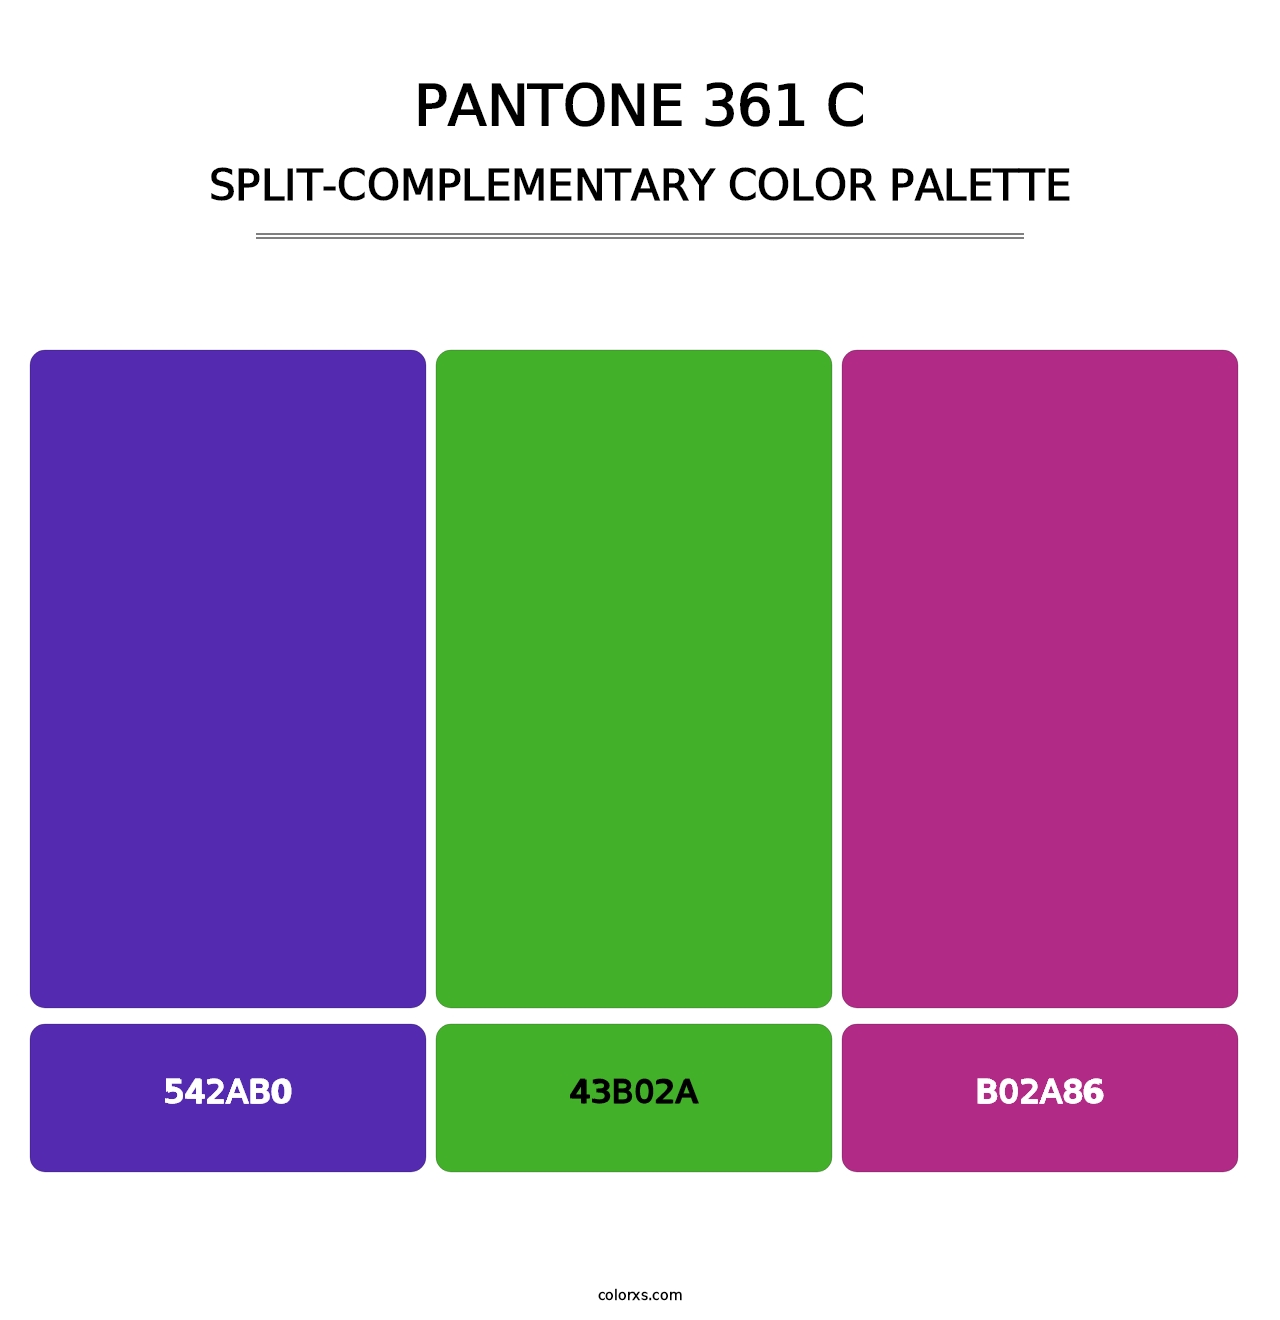 PANTONE 361 C - Split-Complementary Color Palette